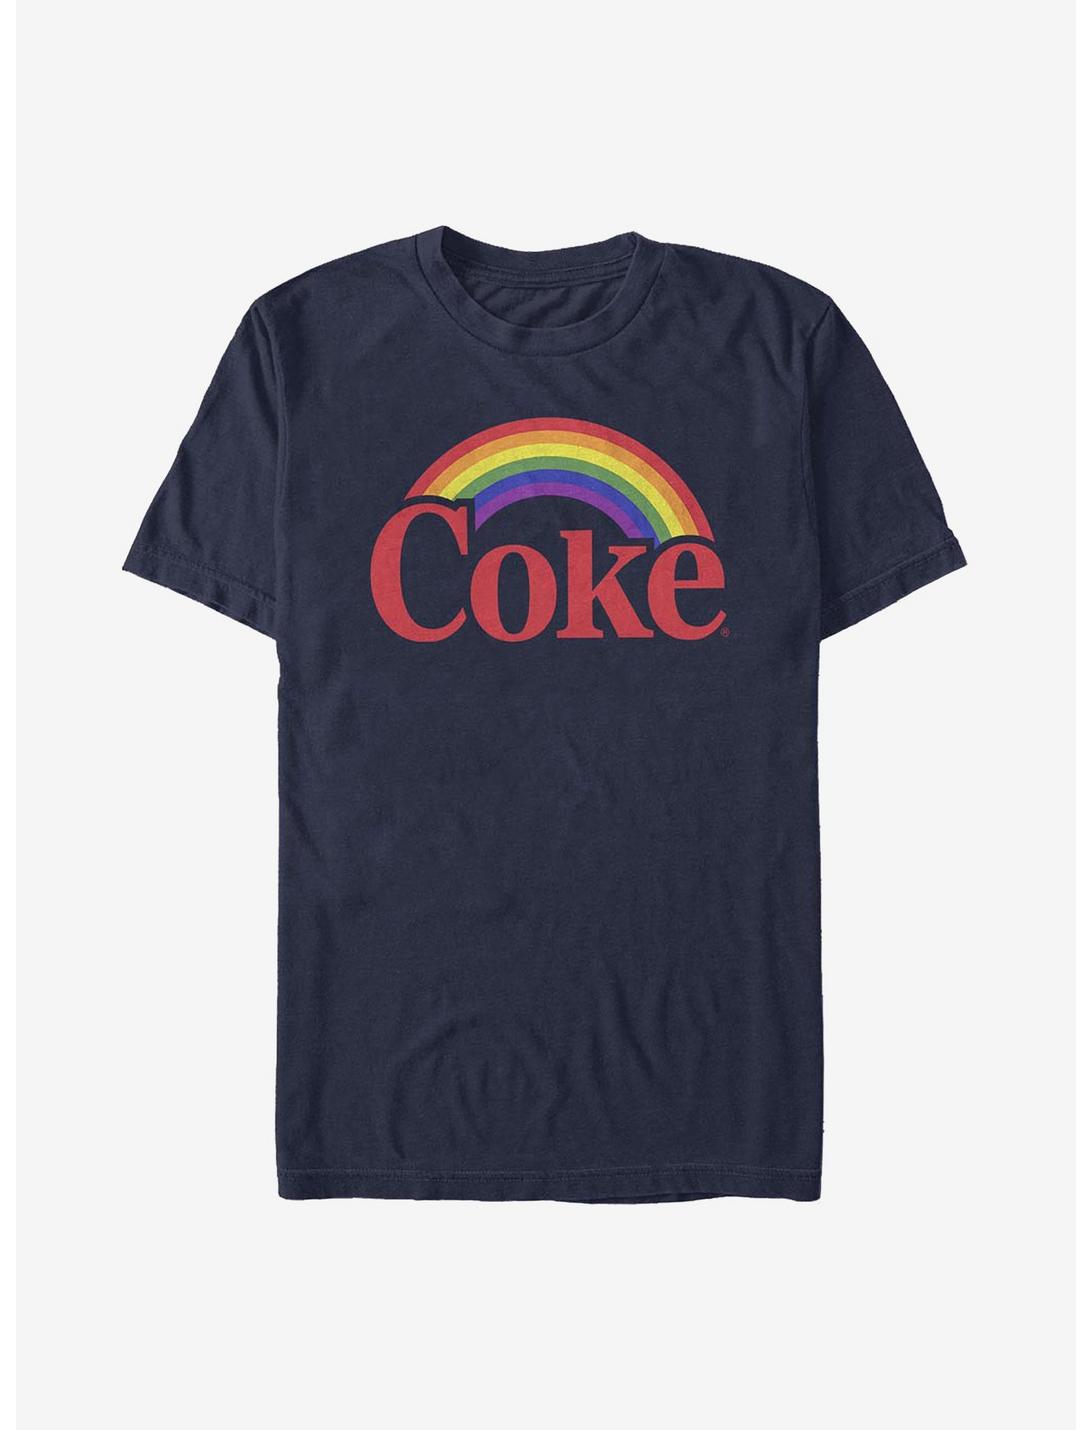 Coca-Cola Rainbow T-Shirt, NAVY, hi-res